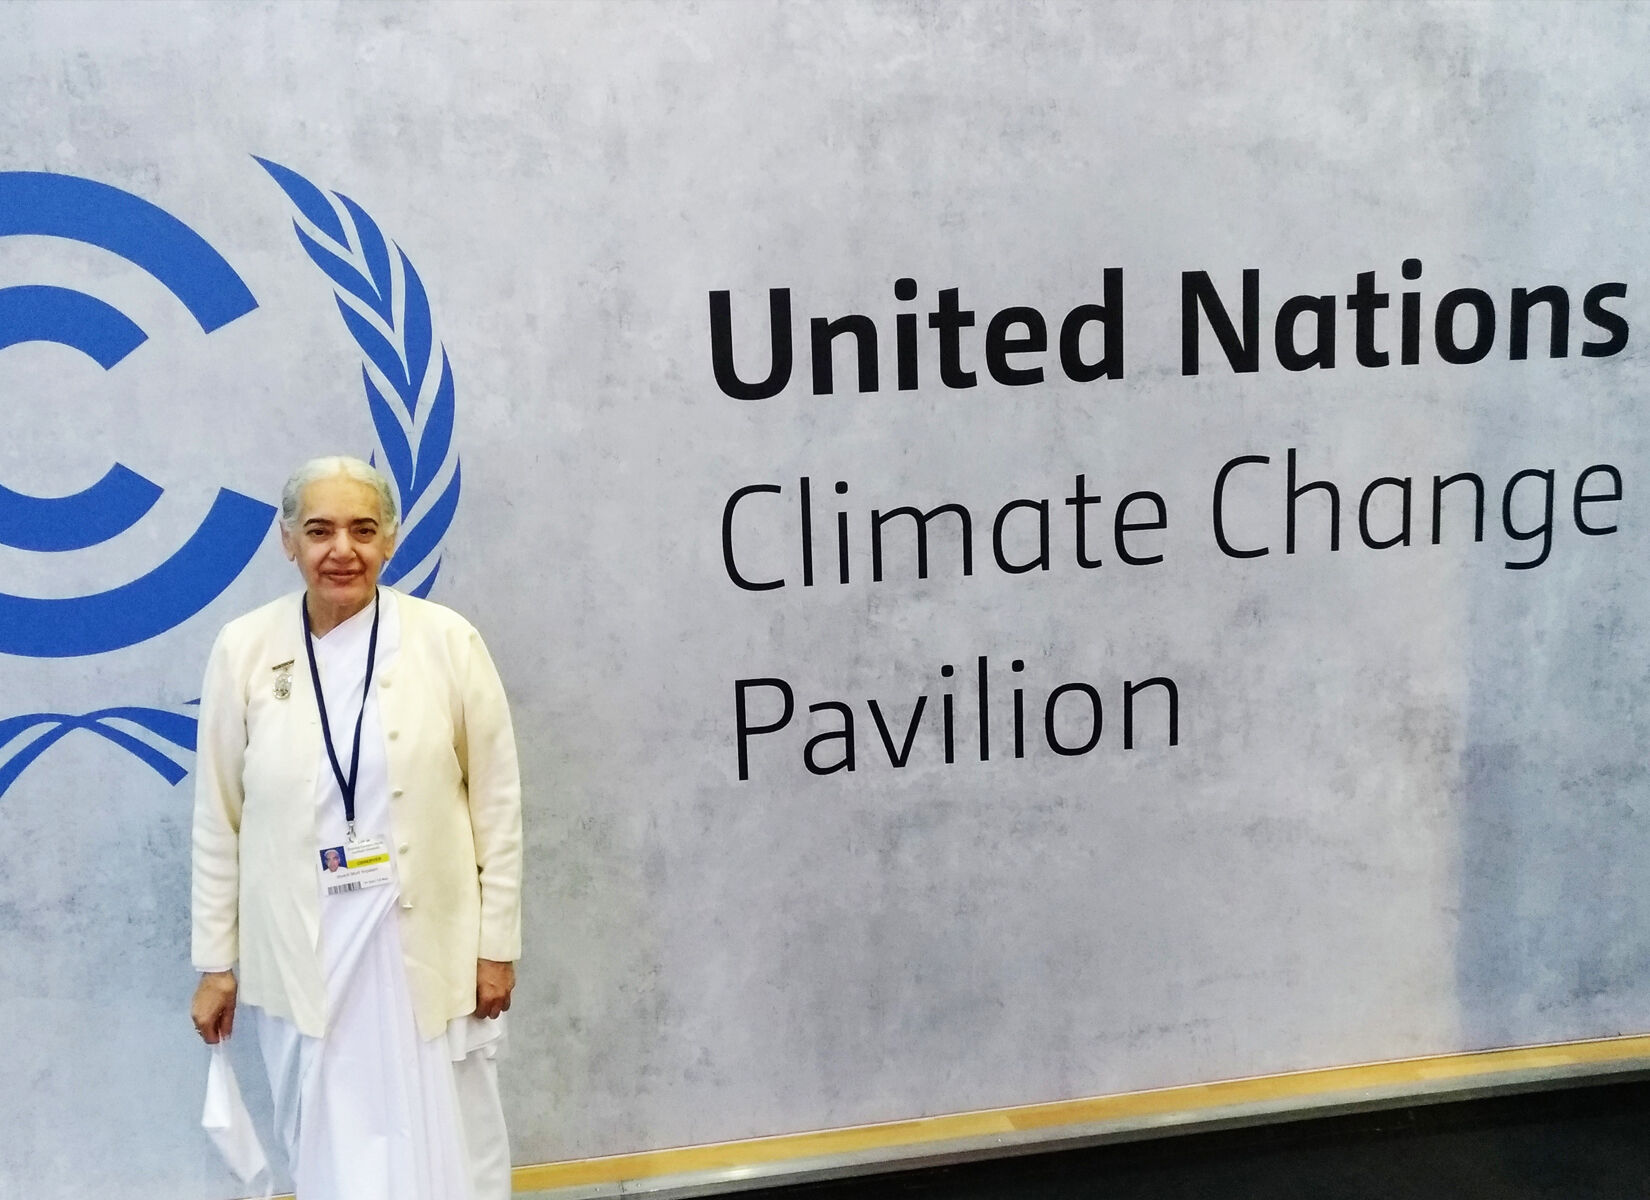 United Nations Climate Change Pavilion COP26, Glasgow, 2021